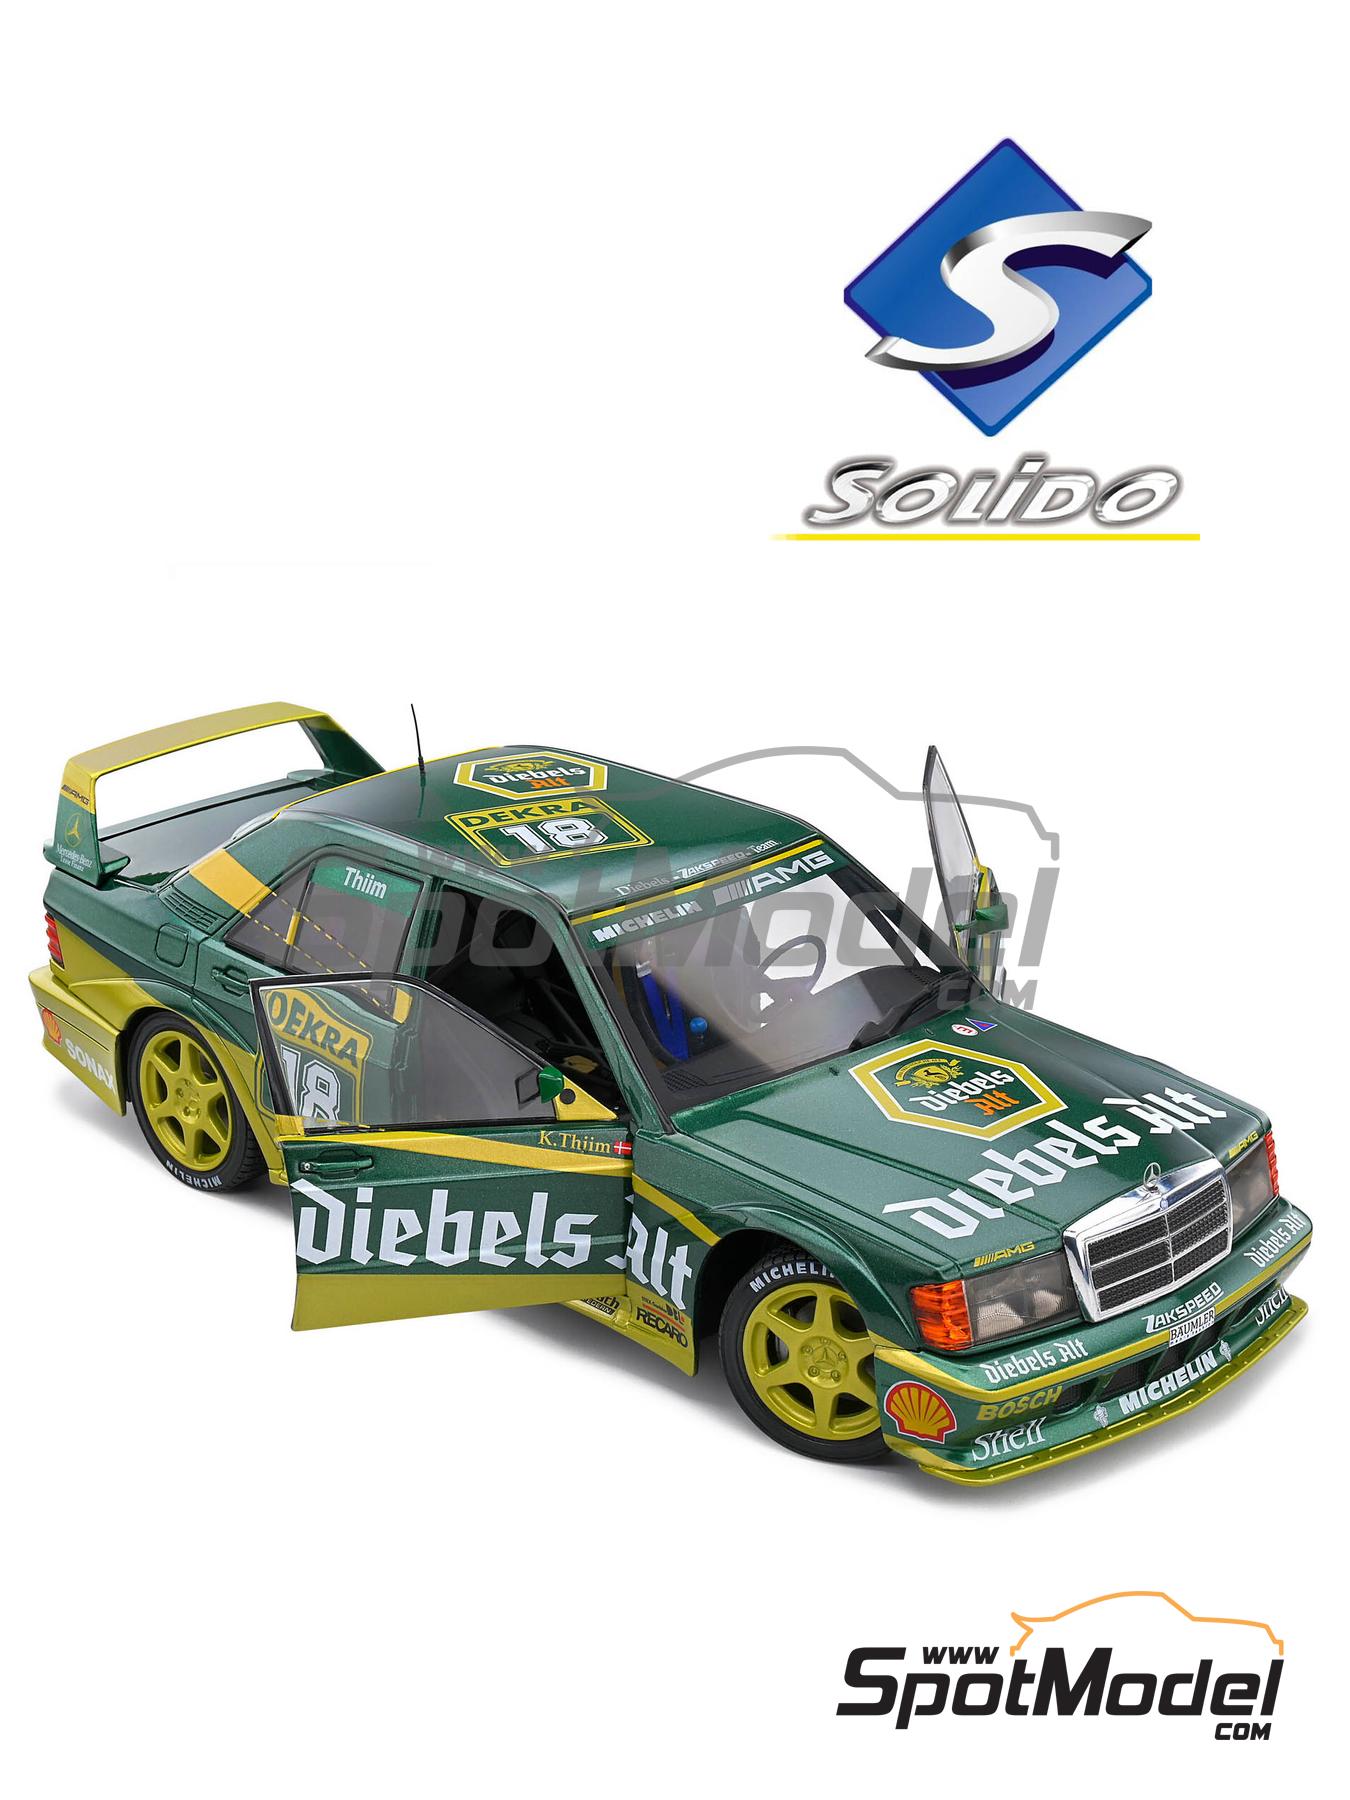 SEMA 2018: Filthy Fab's 1993 Mercedes-Benz 190 EVO